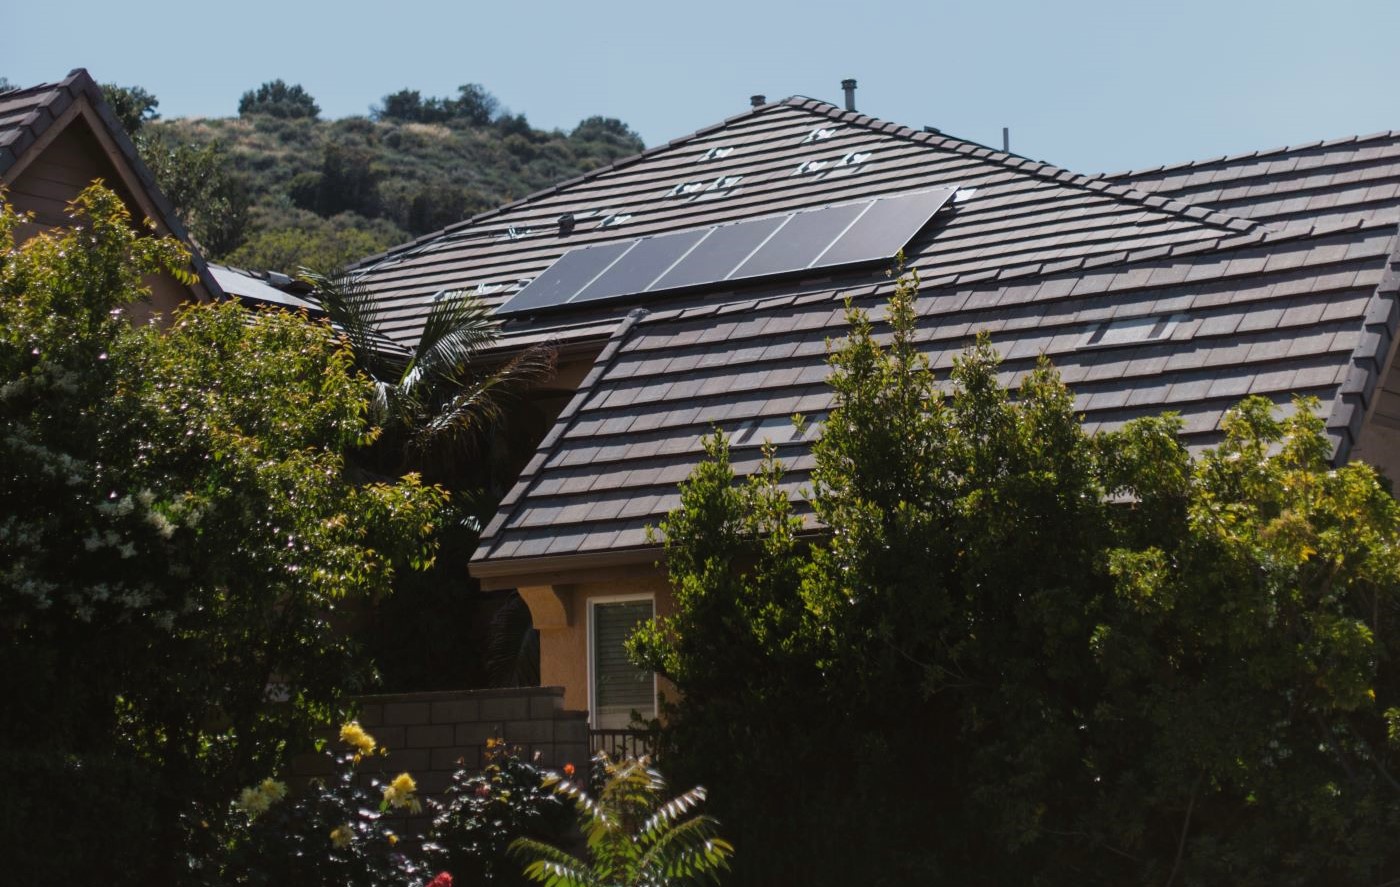 NEM 3.0 makes a solar battery more beneficial in California